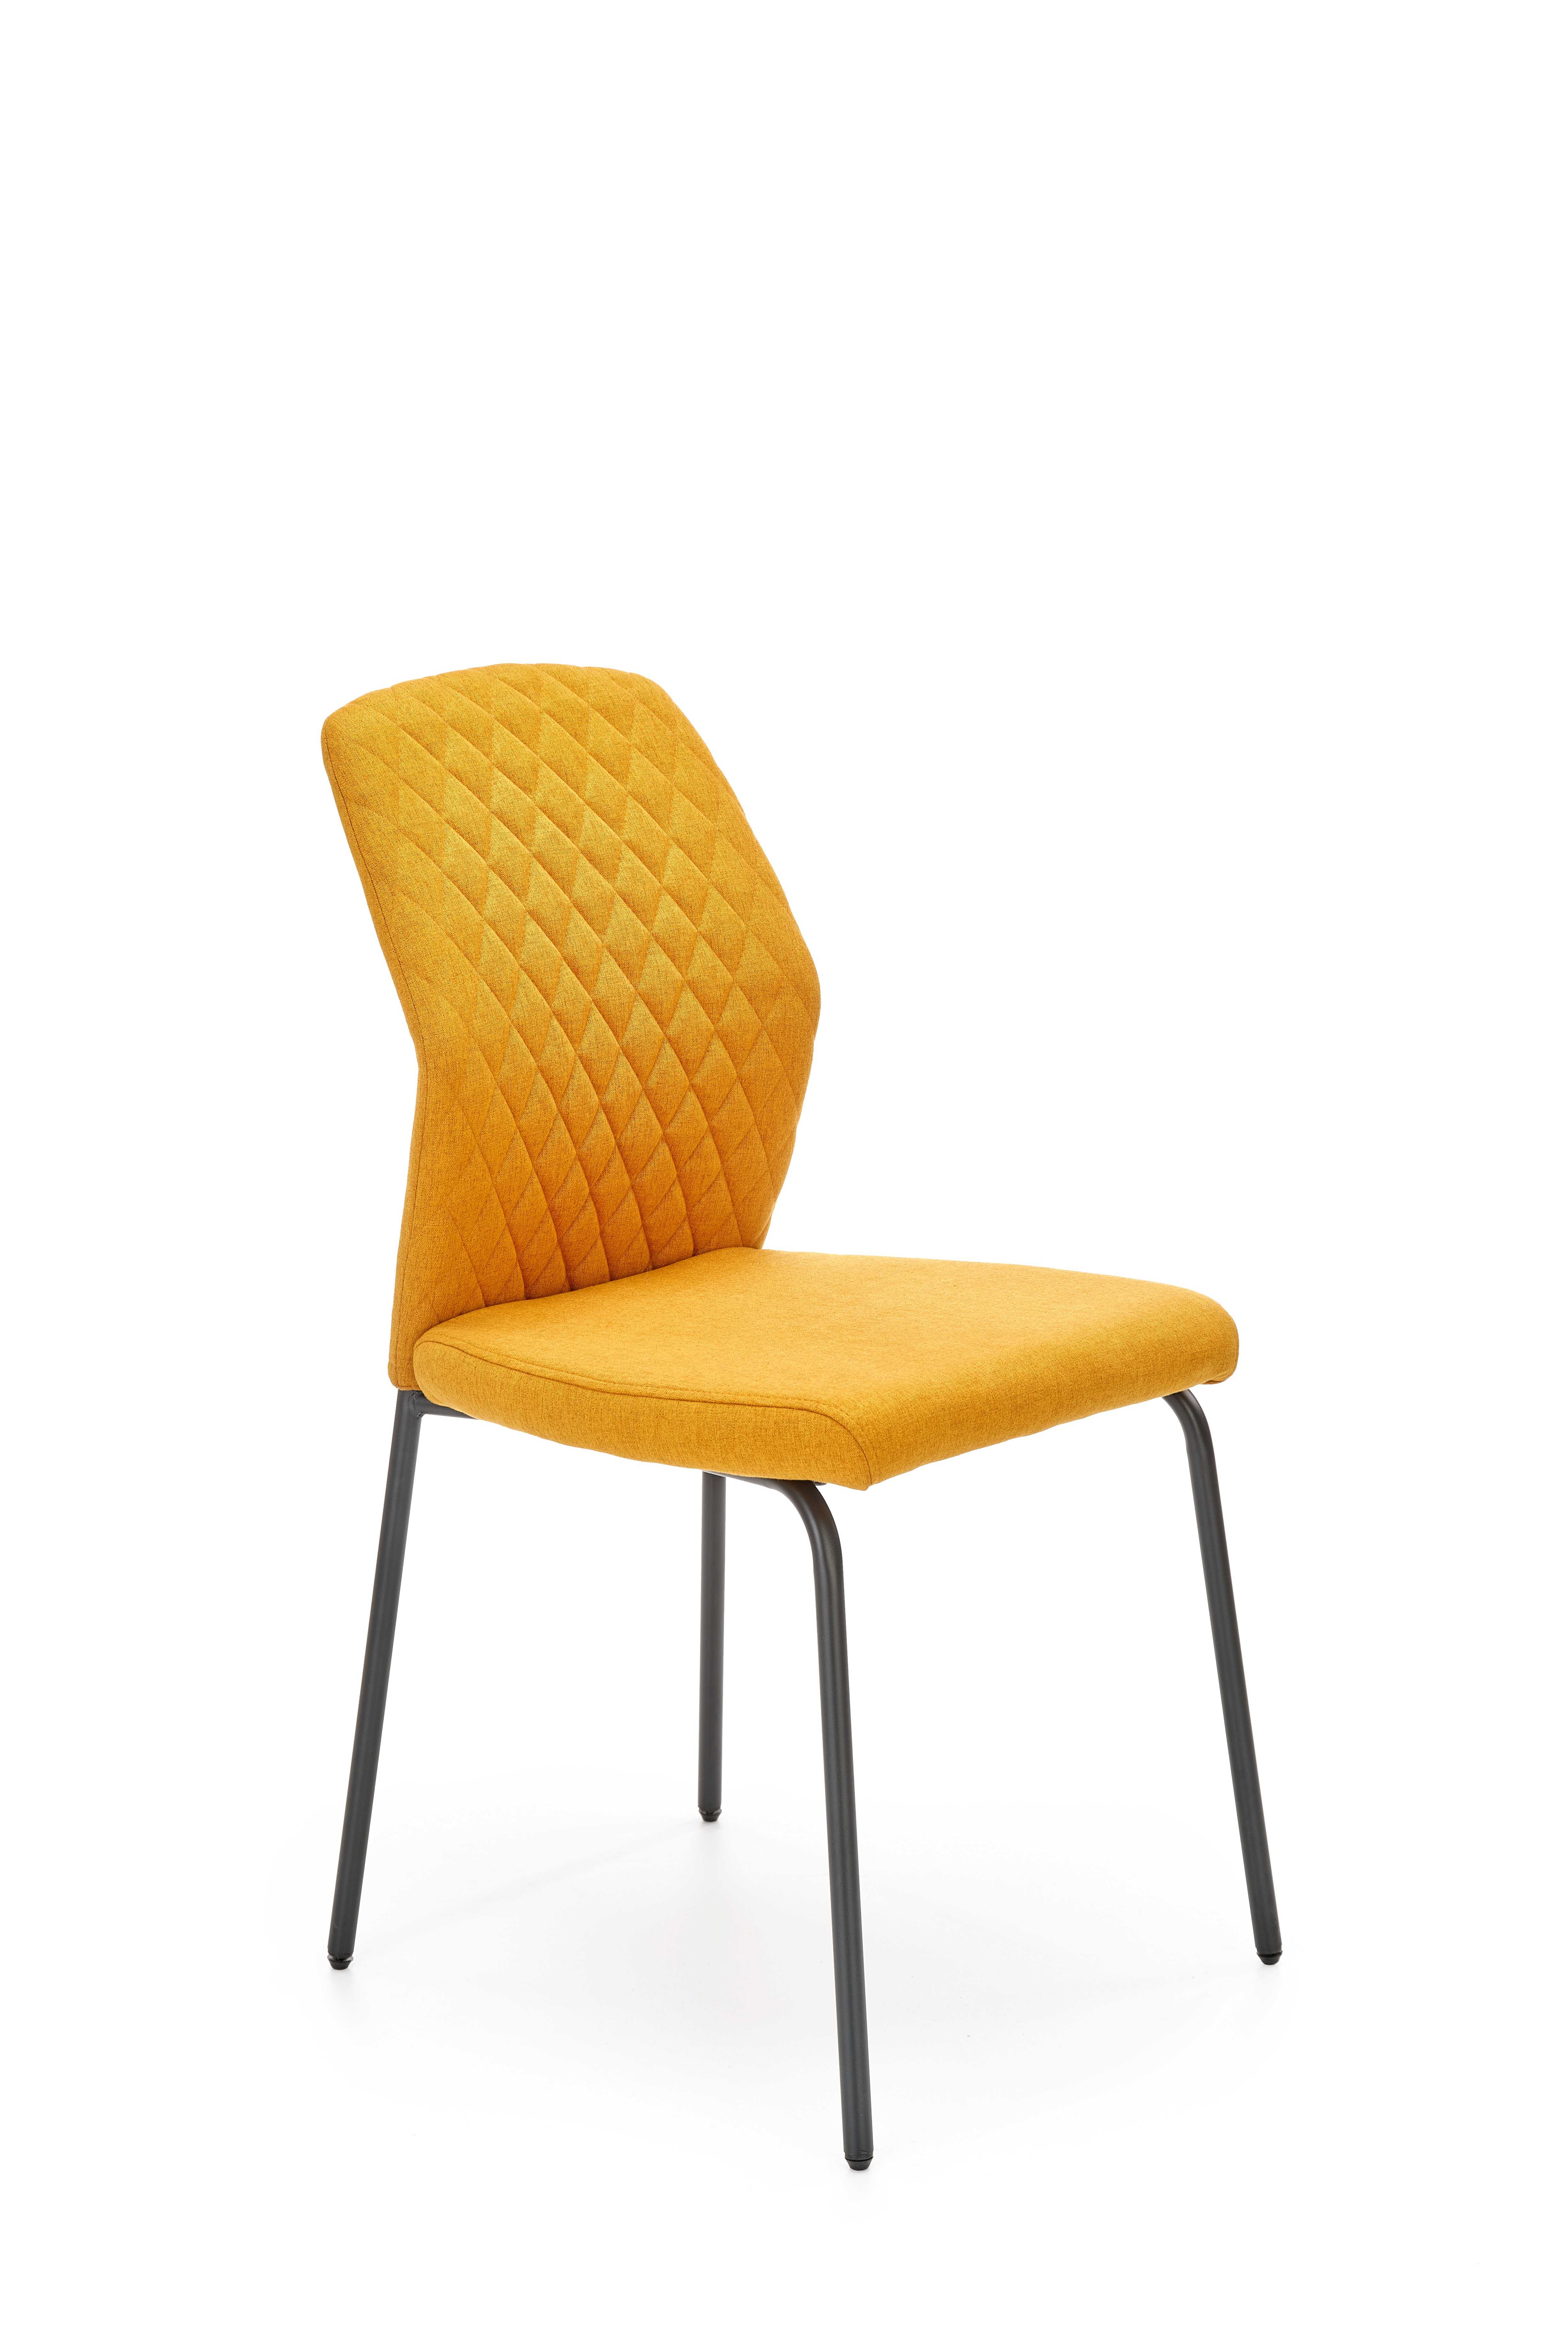 K461 stolica senf